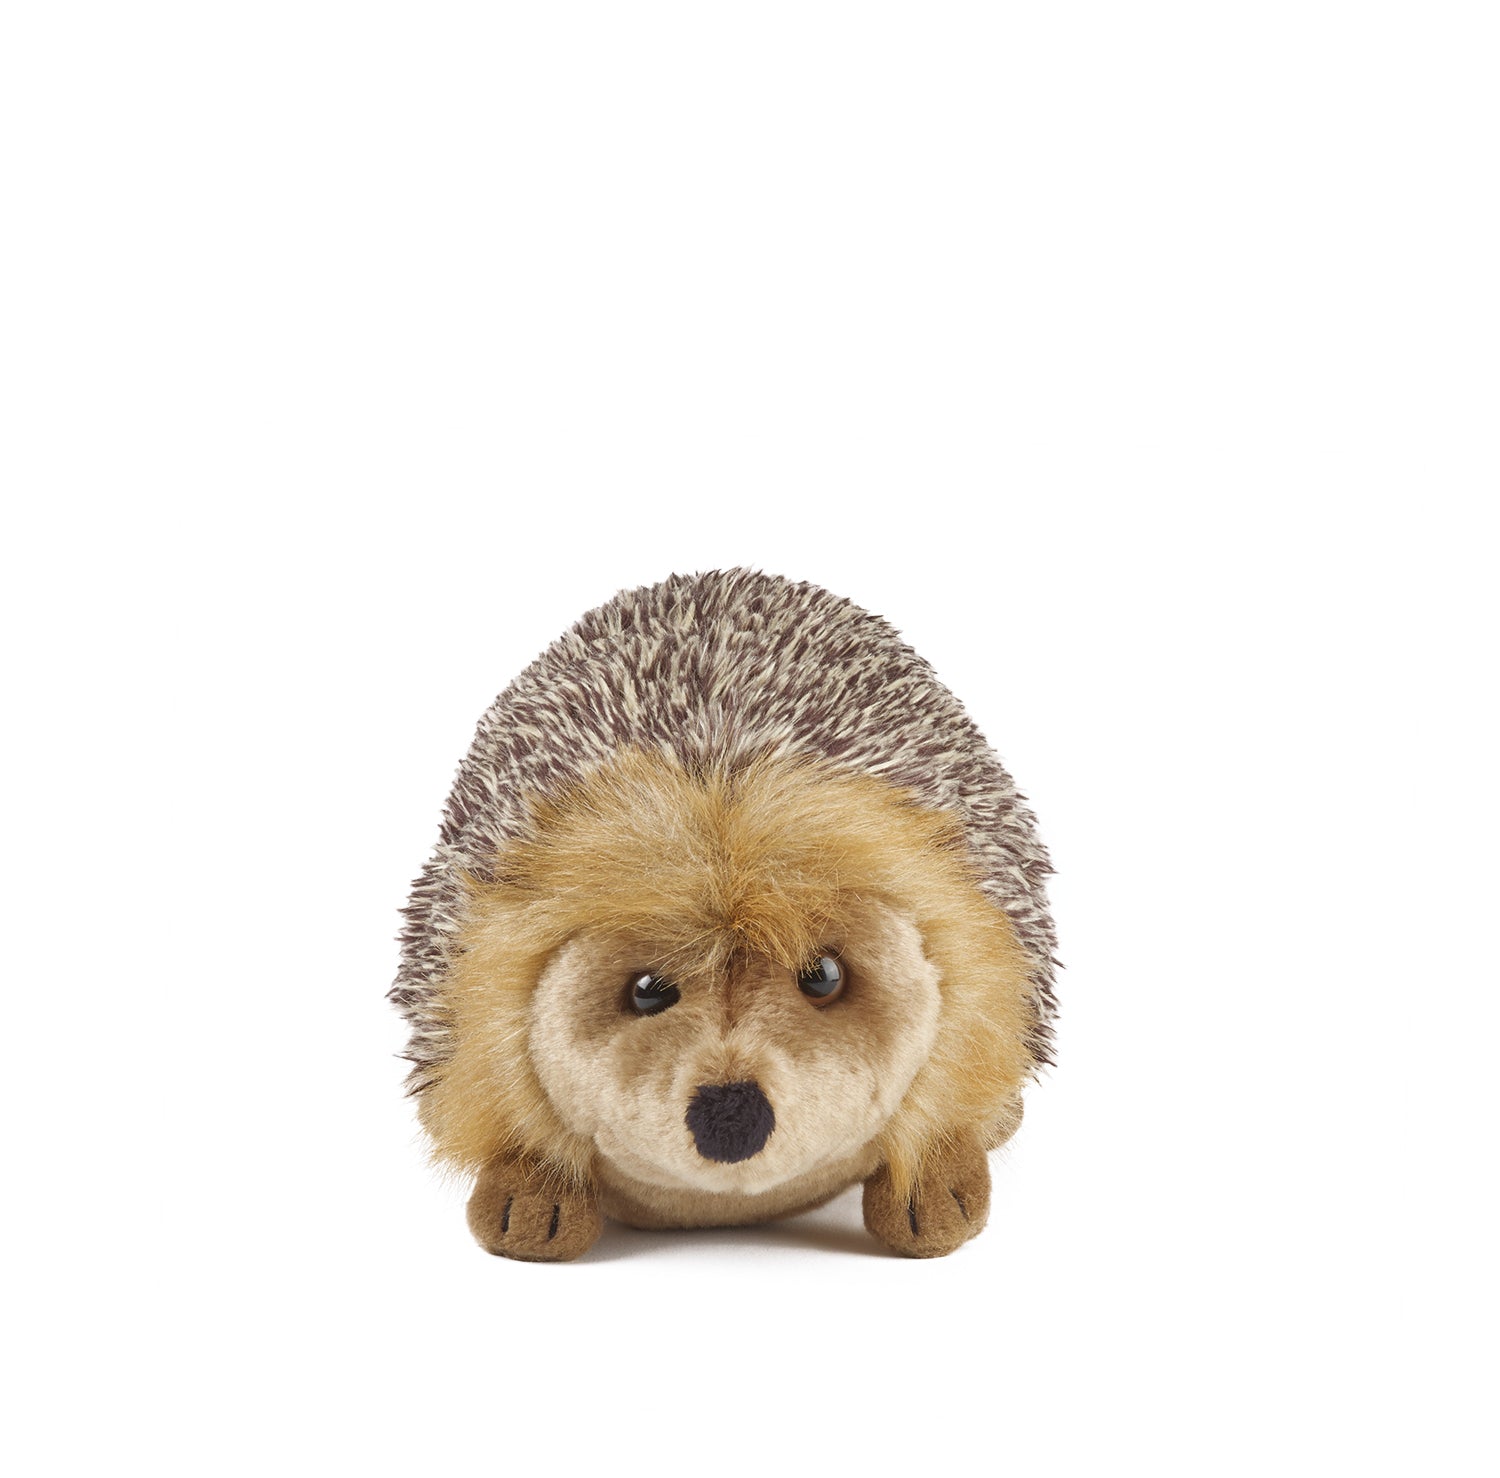 Hedgehog Parent & Baby Set